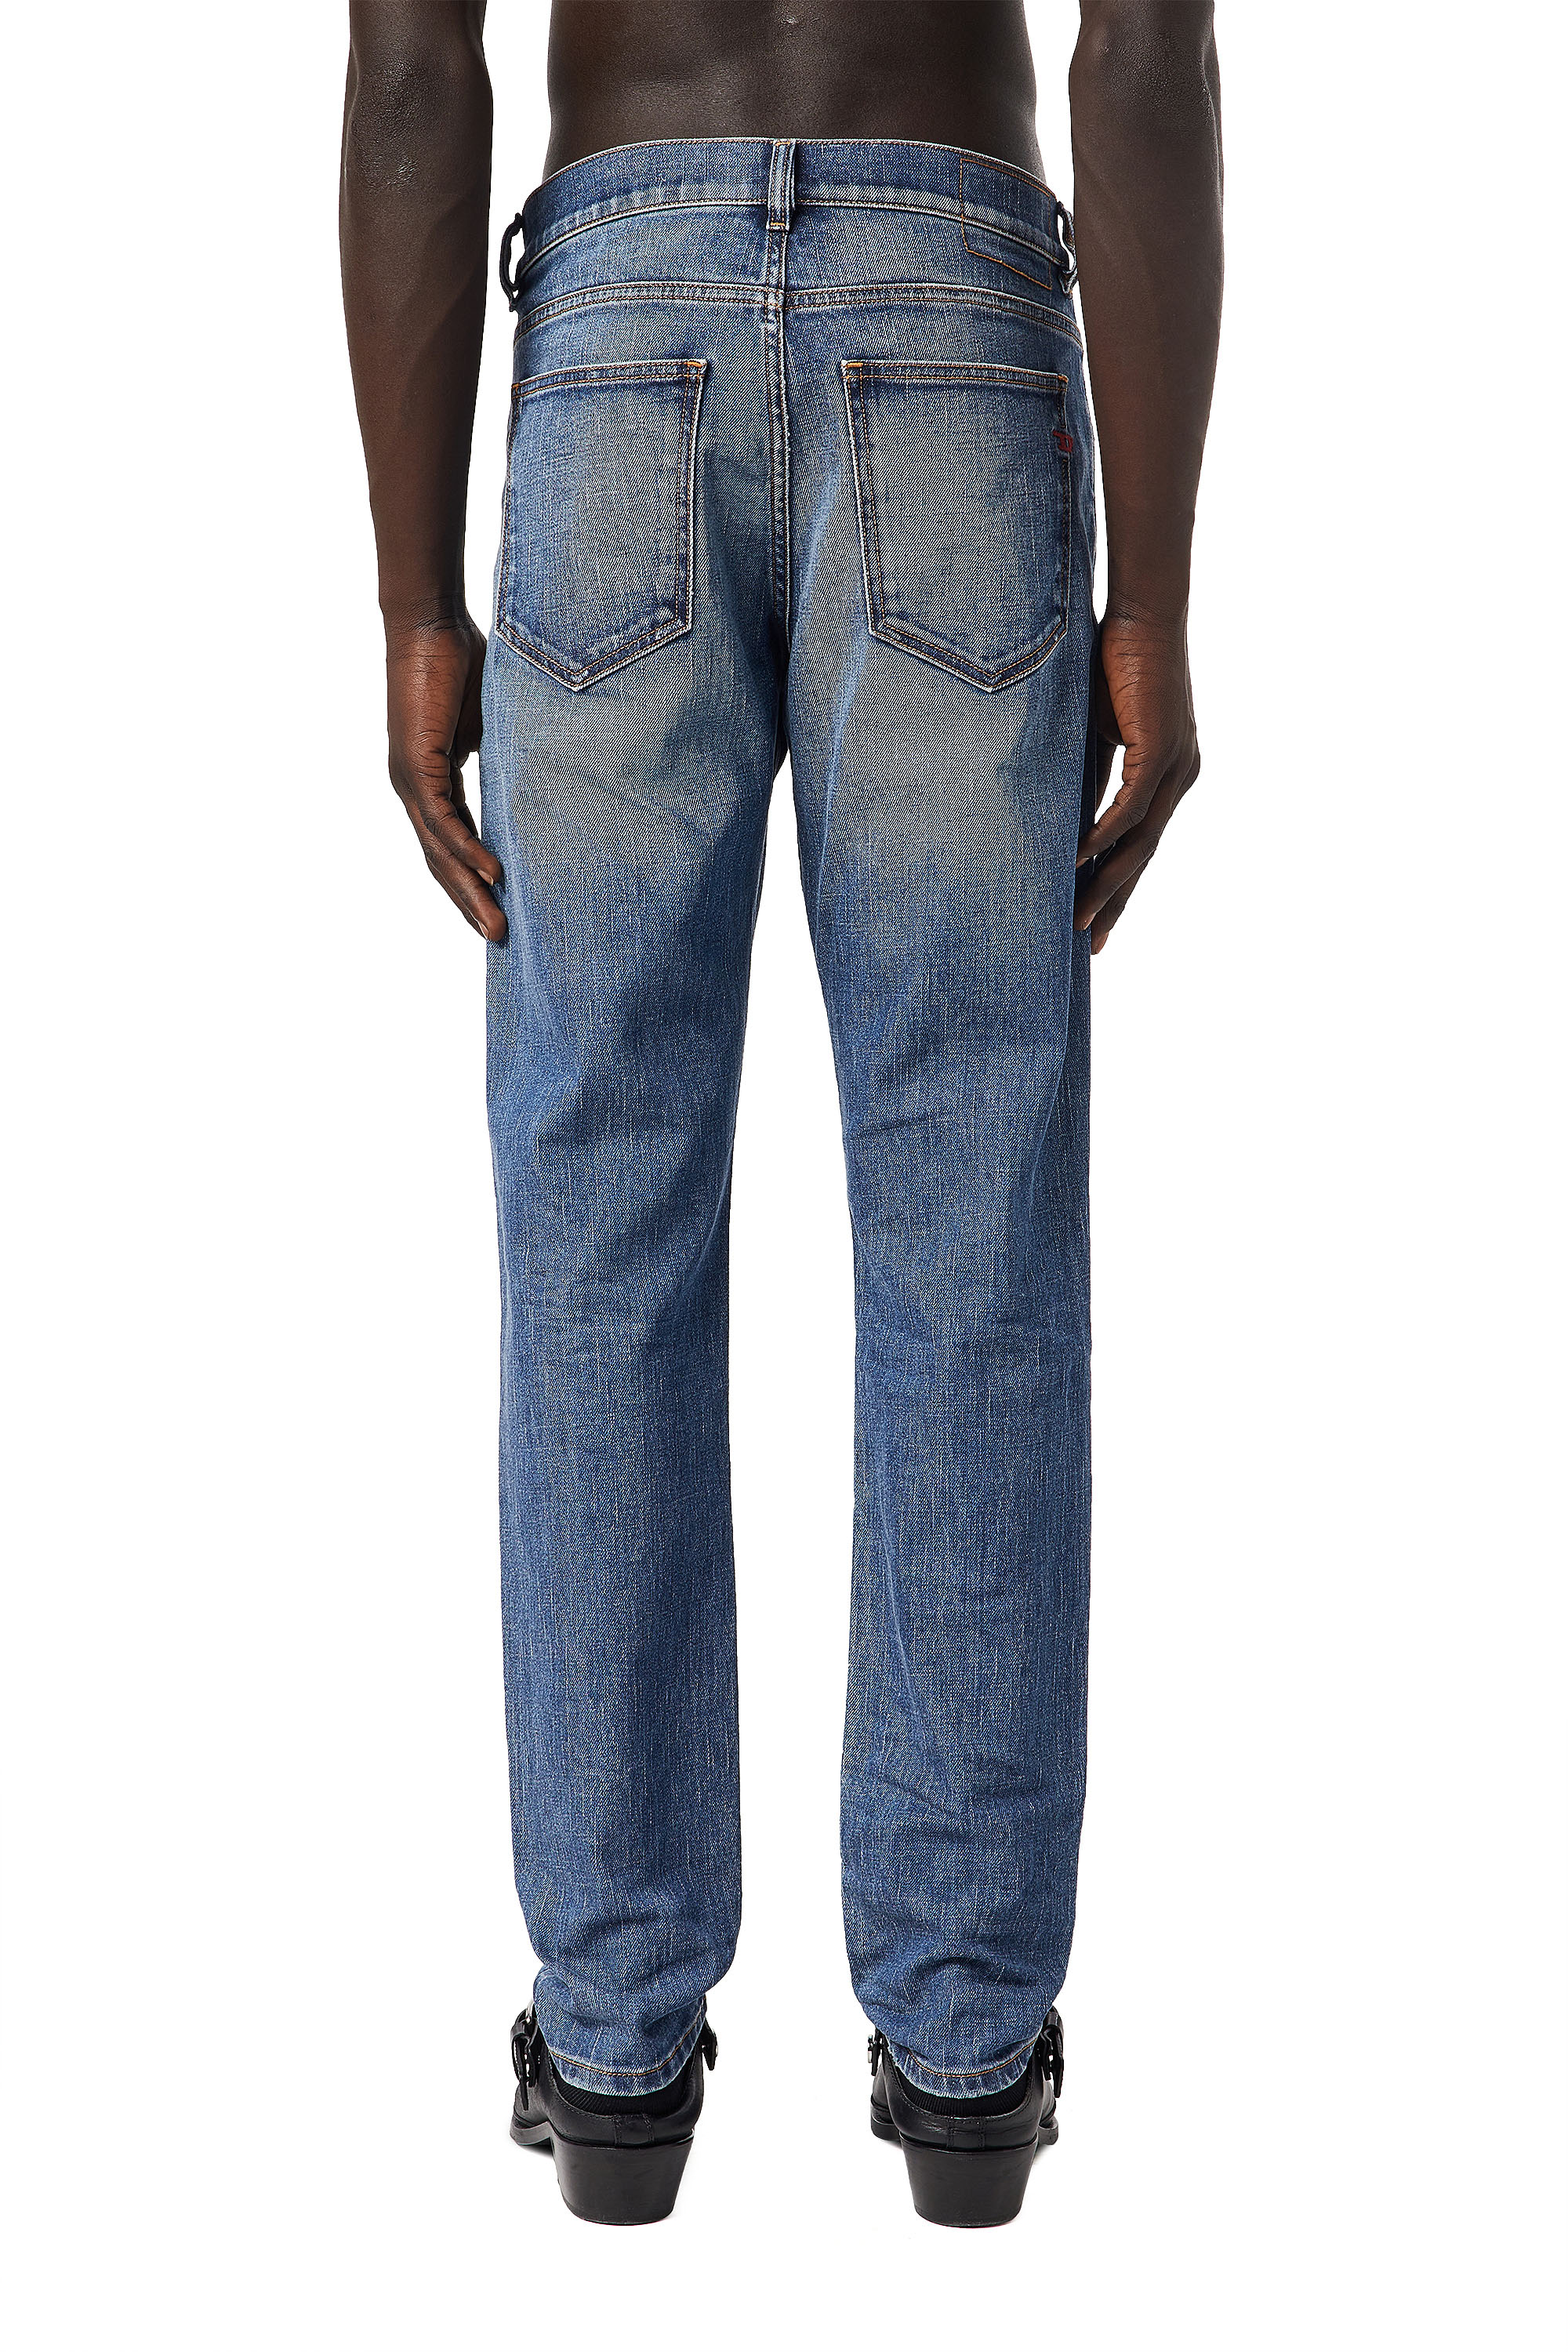 Men's Jeans: Skinny, Slim, Bootcut | Diesel®